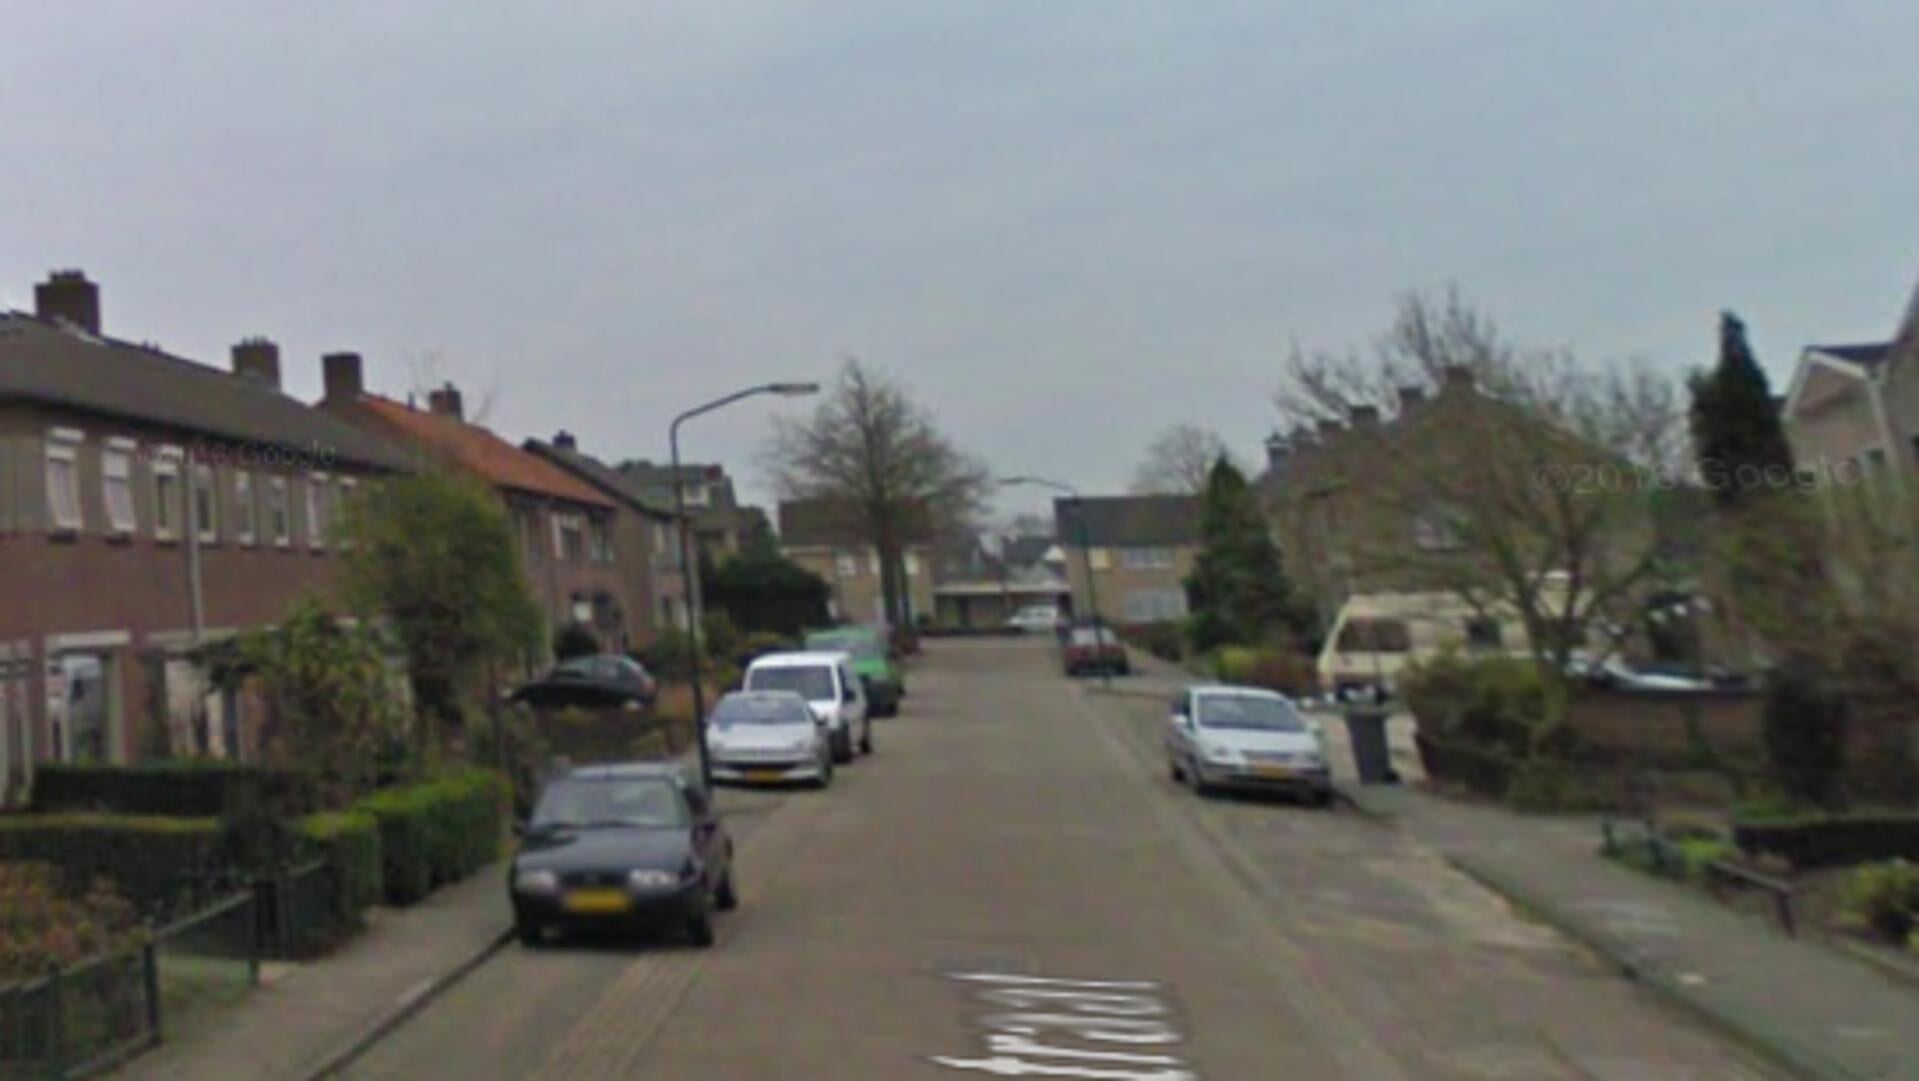 Nelissenstraat in Berghem. (Foto Google Maps)